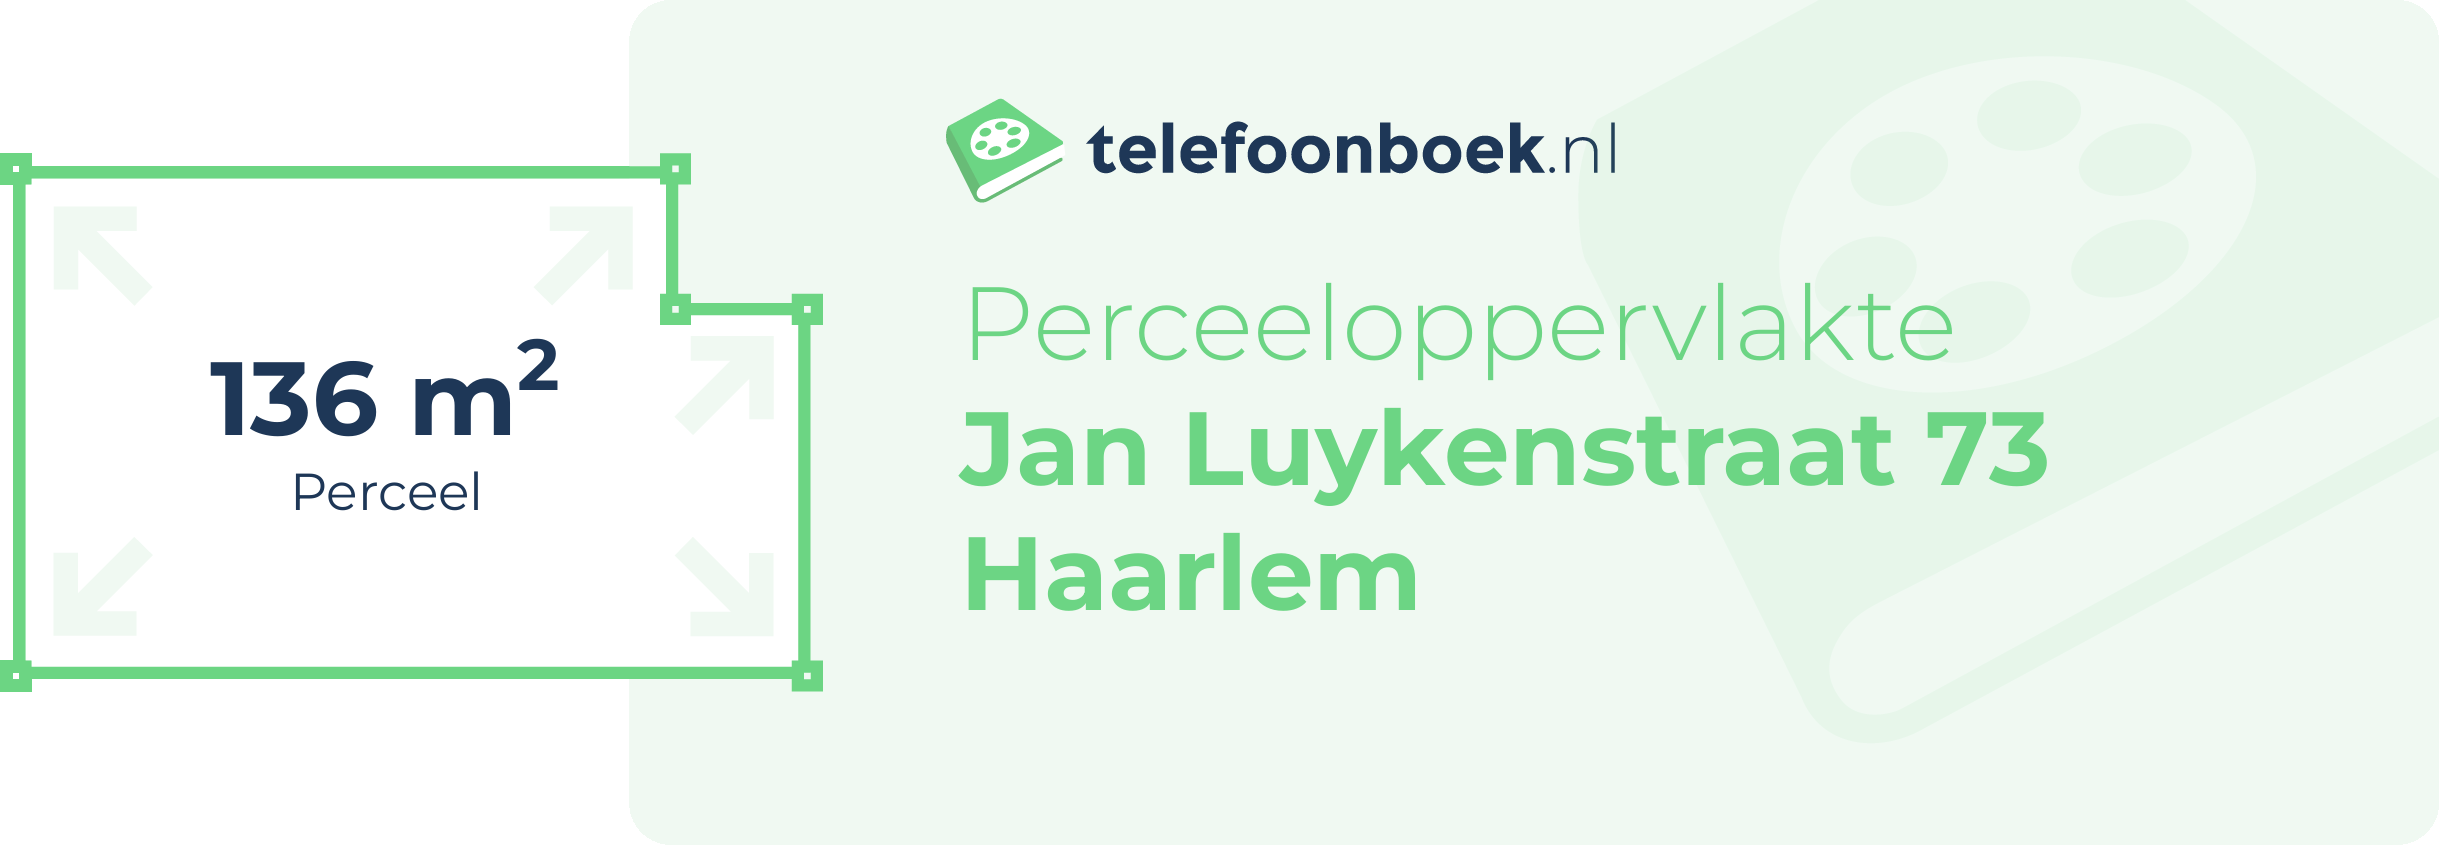 Perceeloppervlakte Jan Luykenstraat 73 Haarlem